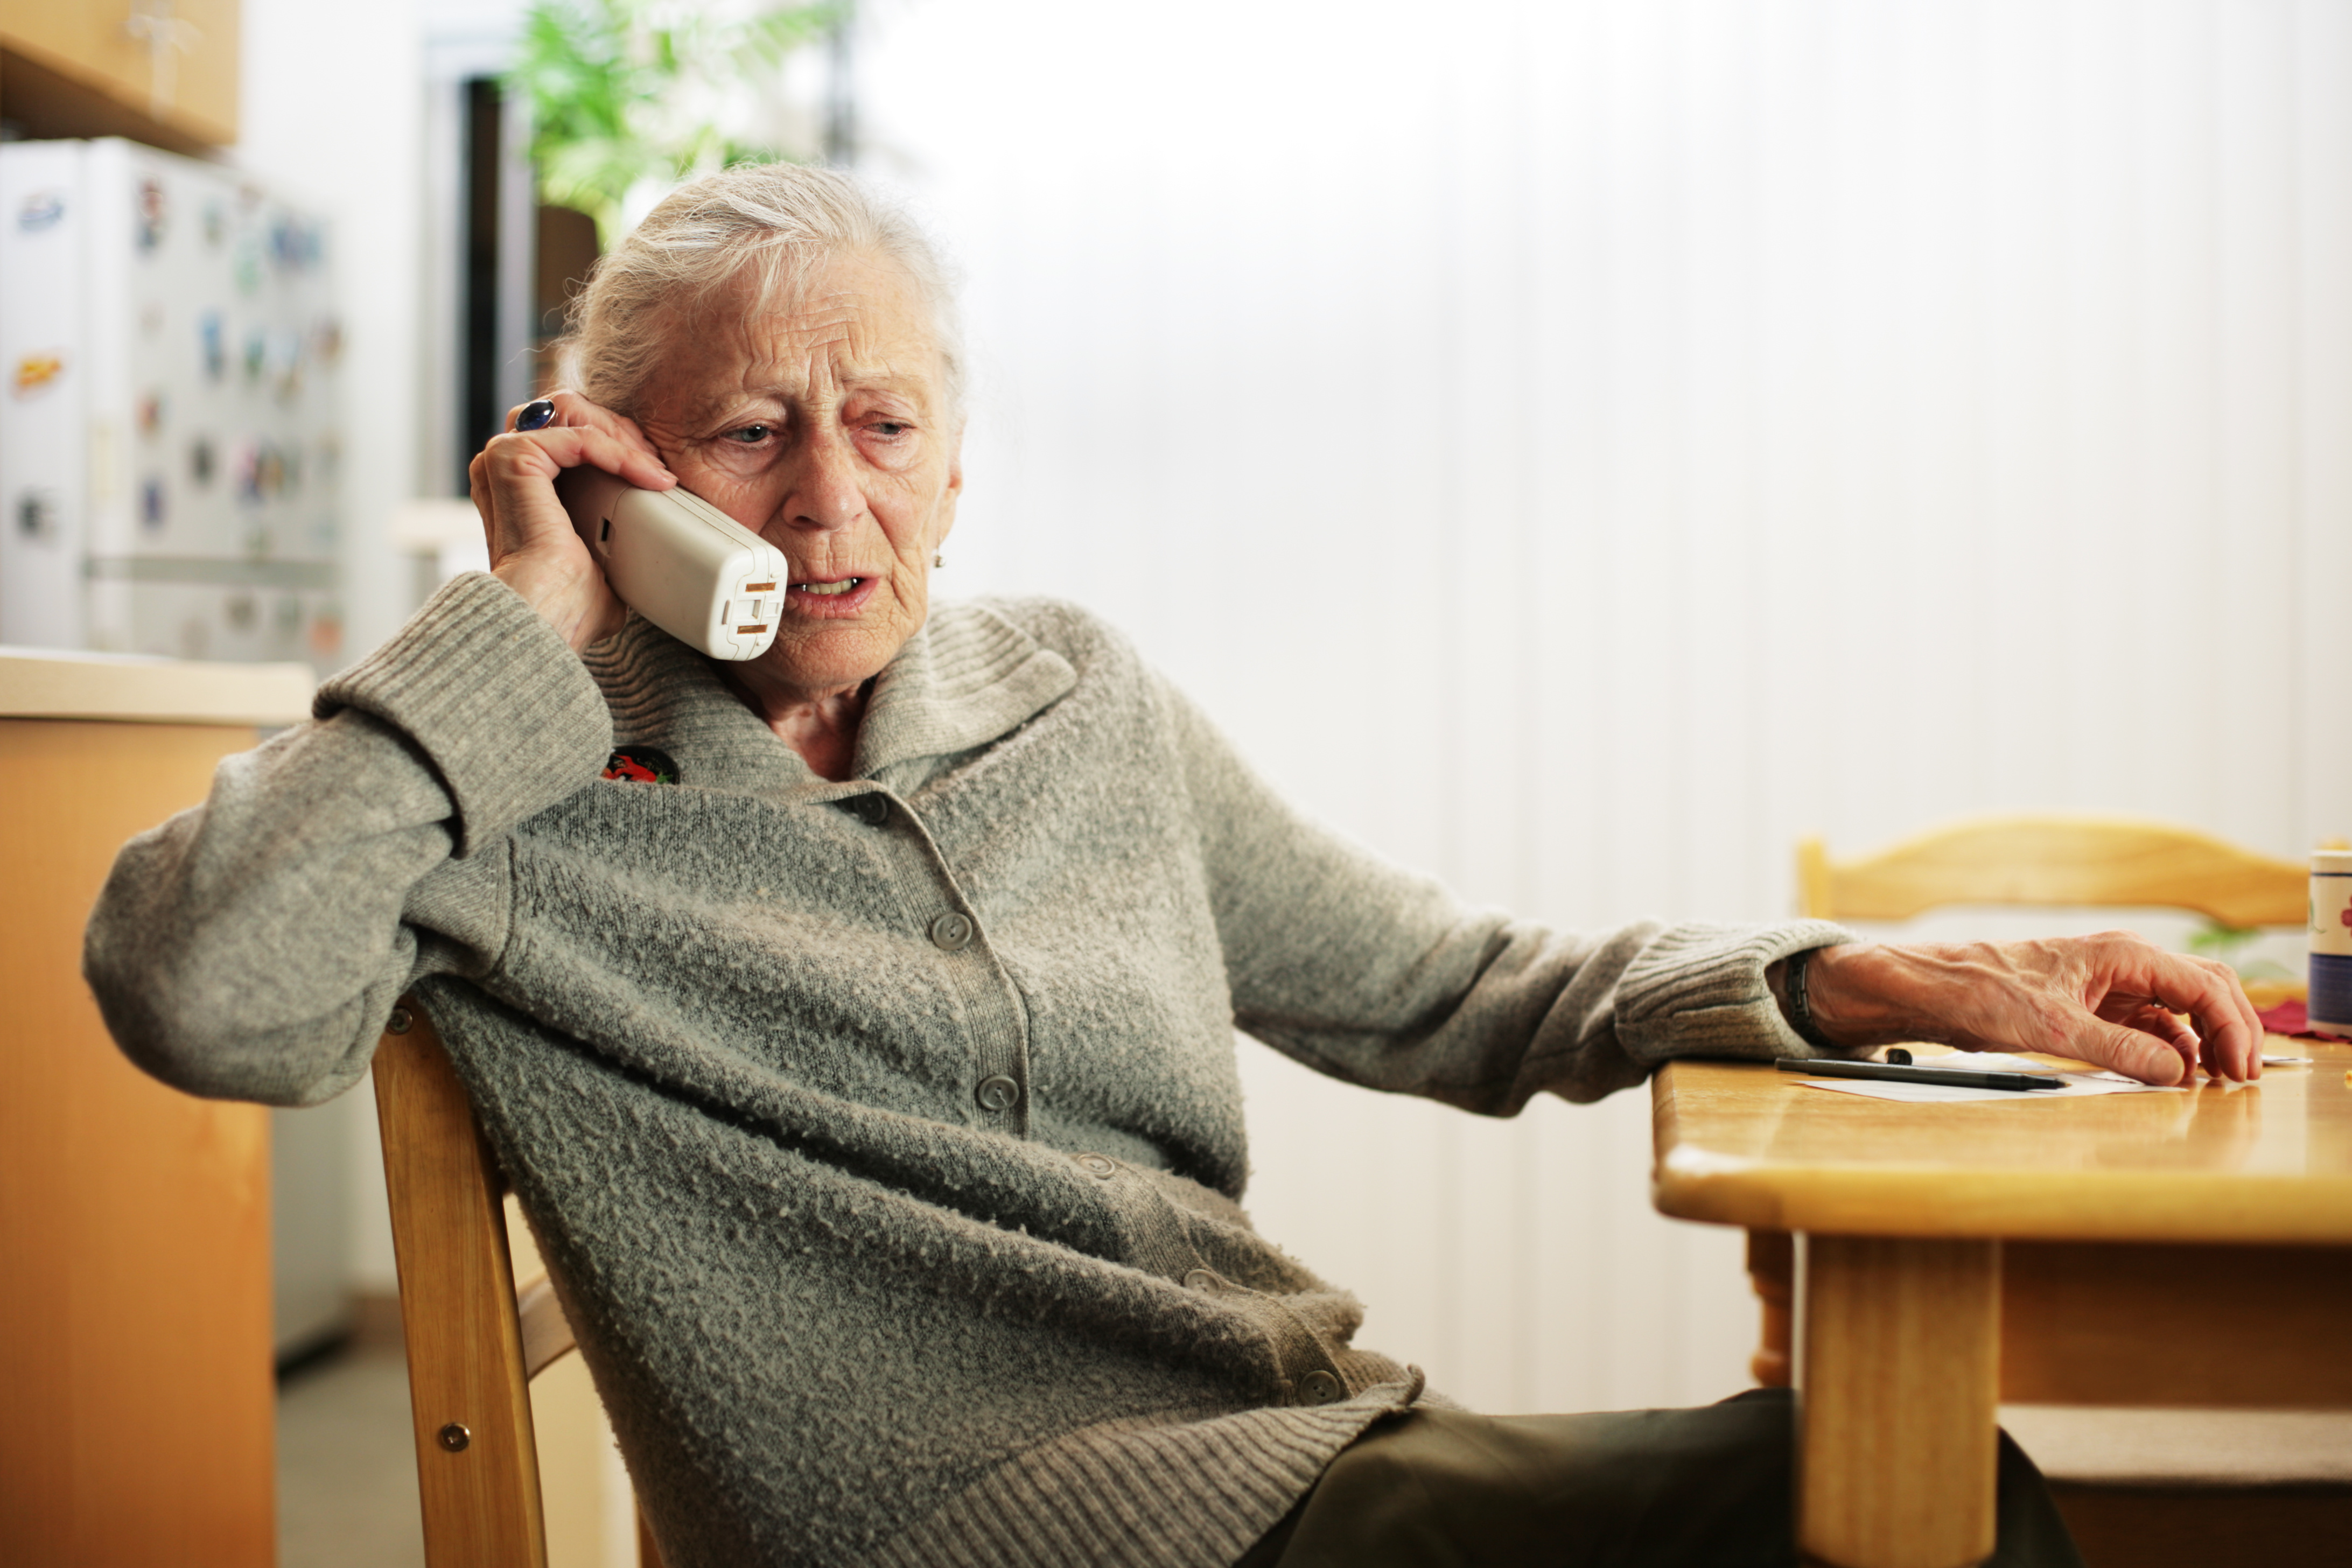 Пенсионеры по старому. Пожилая женщина с телефоном. Пенсионер с телефоном в руке. Телефон для пожилых. Пожилая женщина с телефоном в руках.